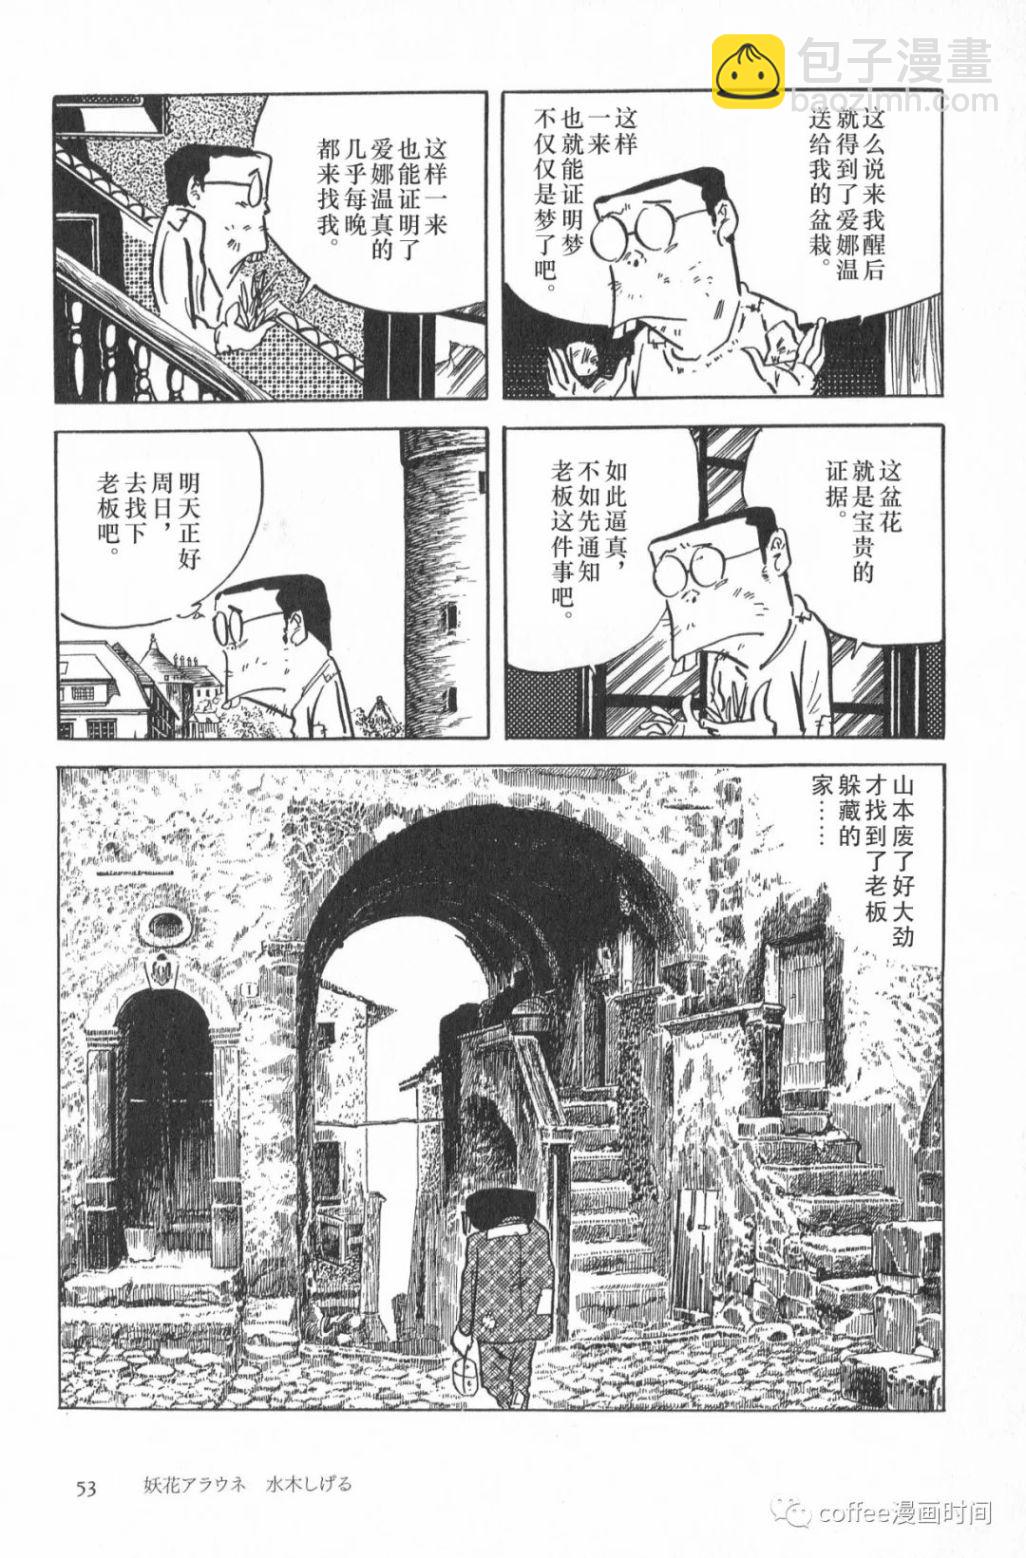 日本短篇漫畫傑作集 - 水木茂《妖花愛娜溫》 - 1